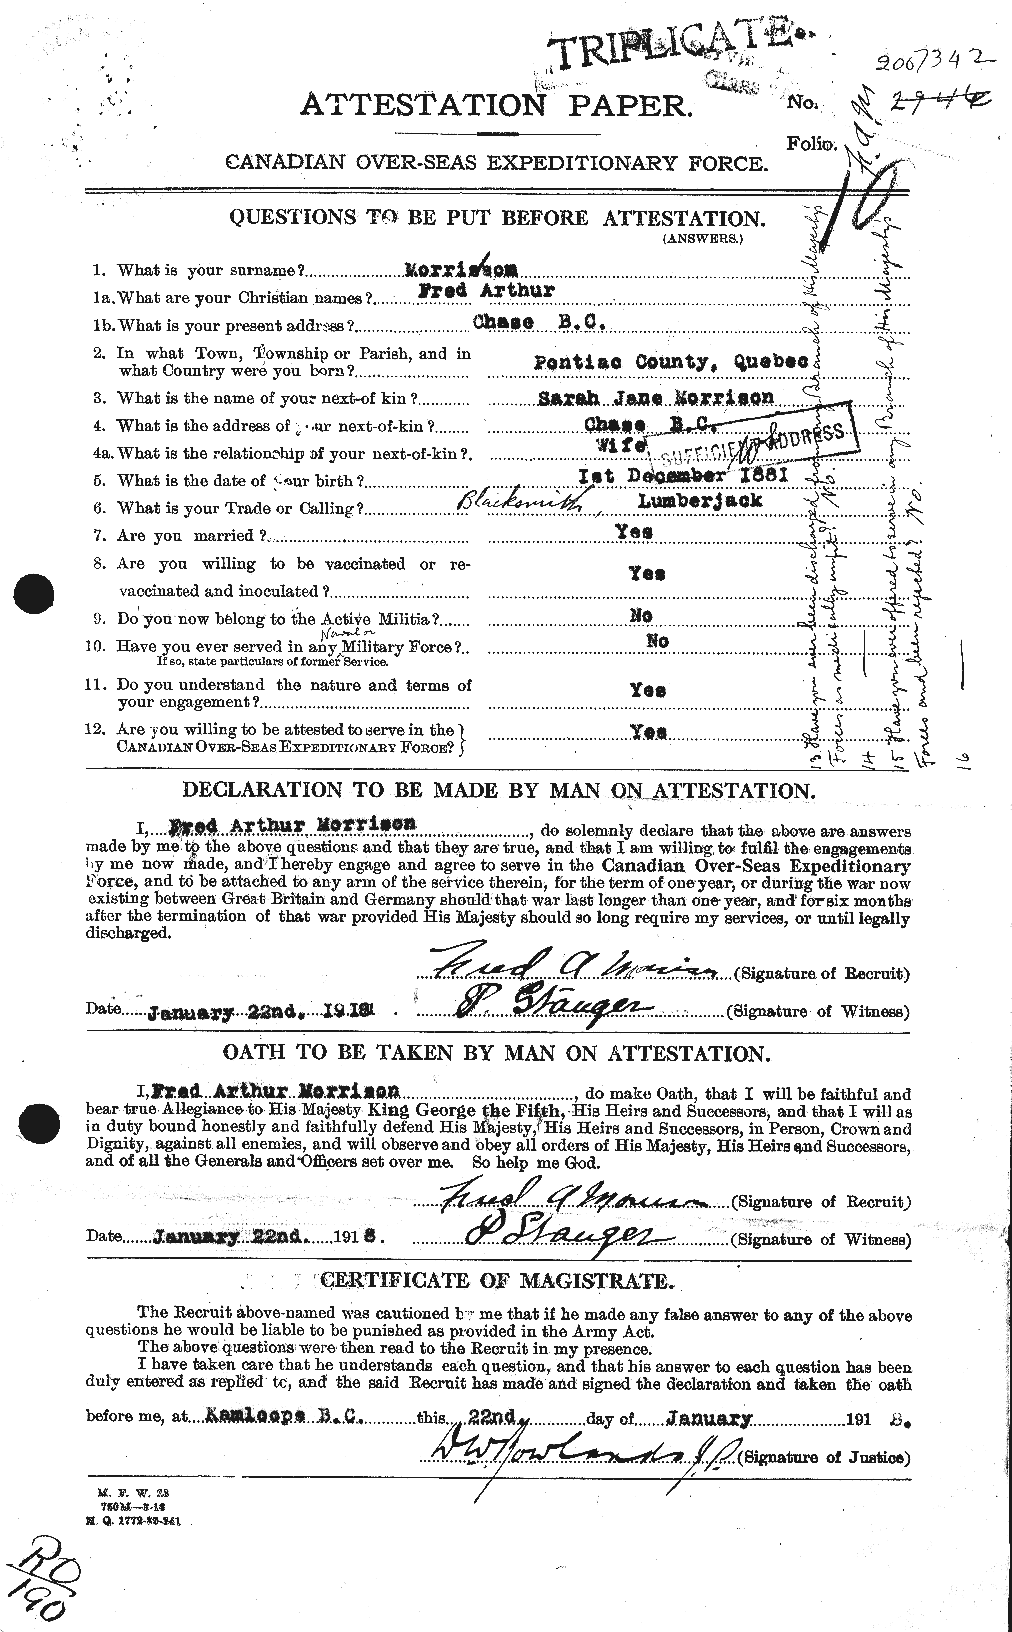 Dossiers du Personnel de la Première Guerre mondiale - CEC 505551a